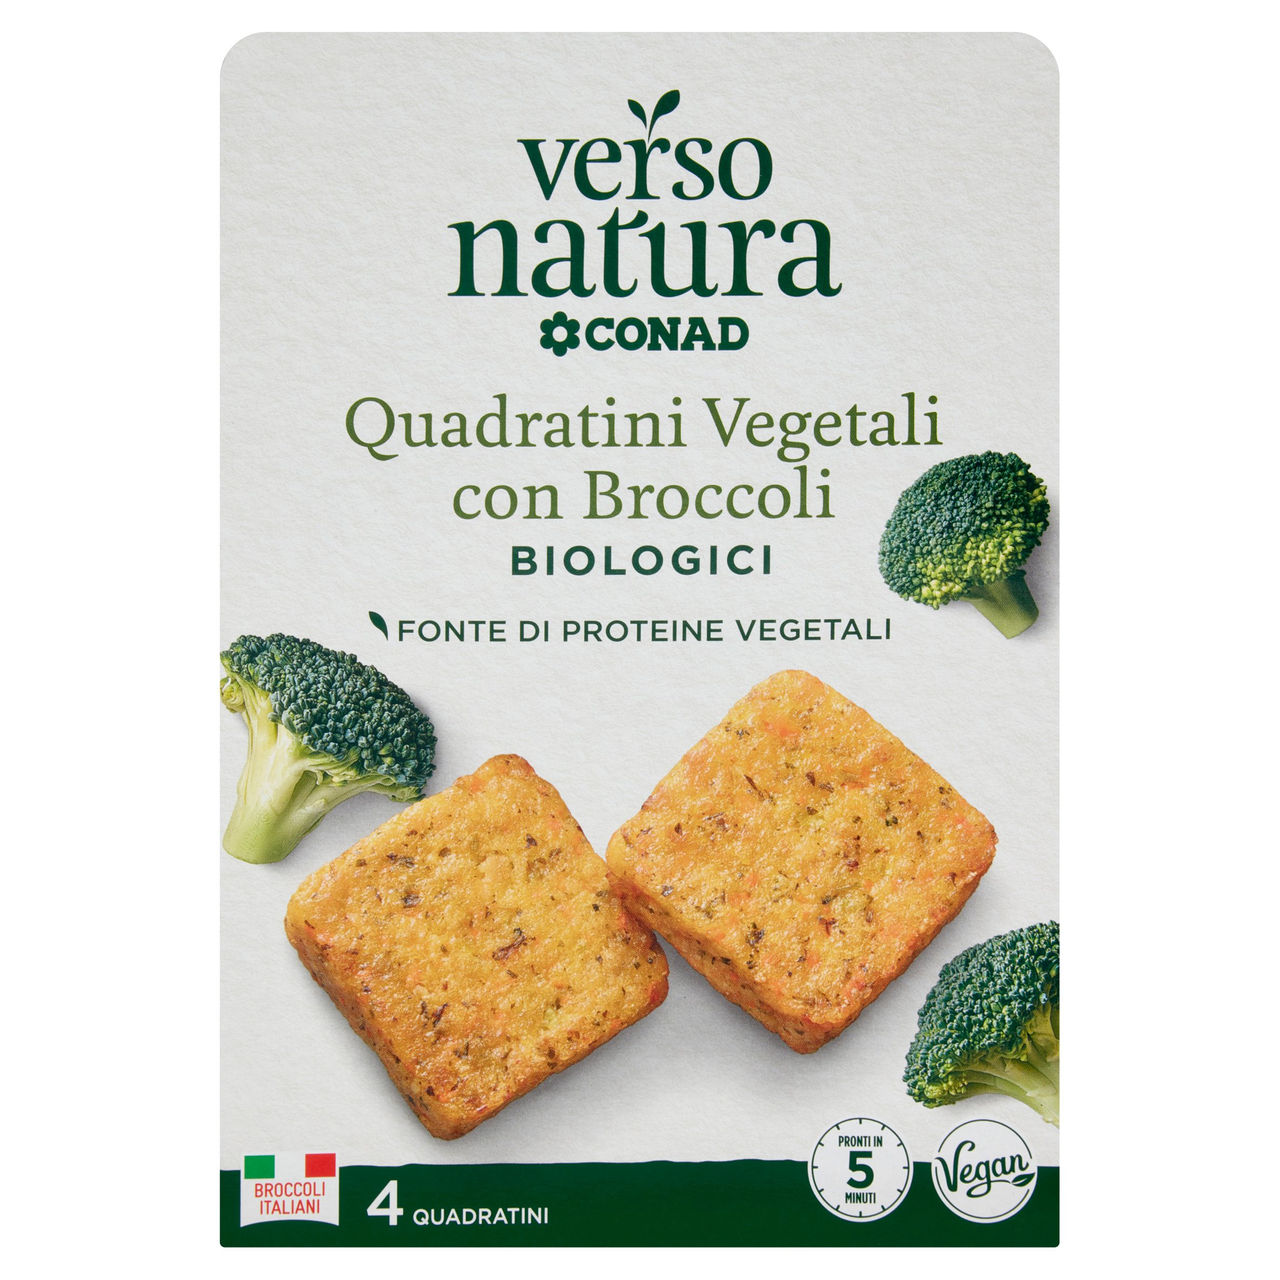 CONAD VERSO NATURA Quadratini Vegetali con Broccoli Biologici 4 Quadratini 160 g